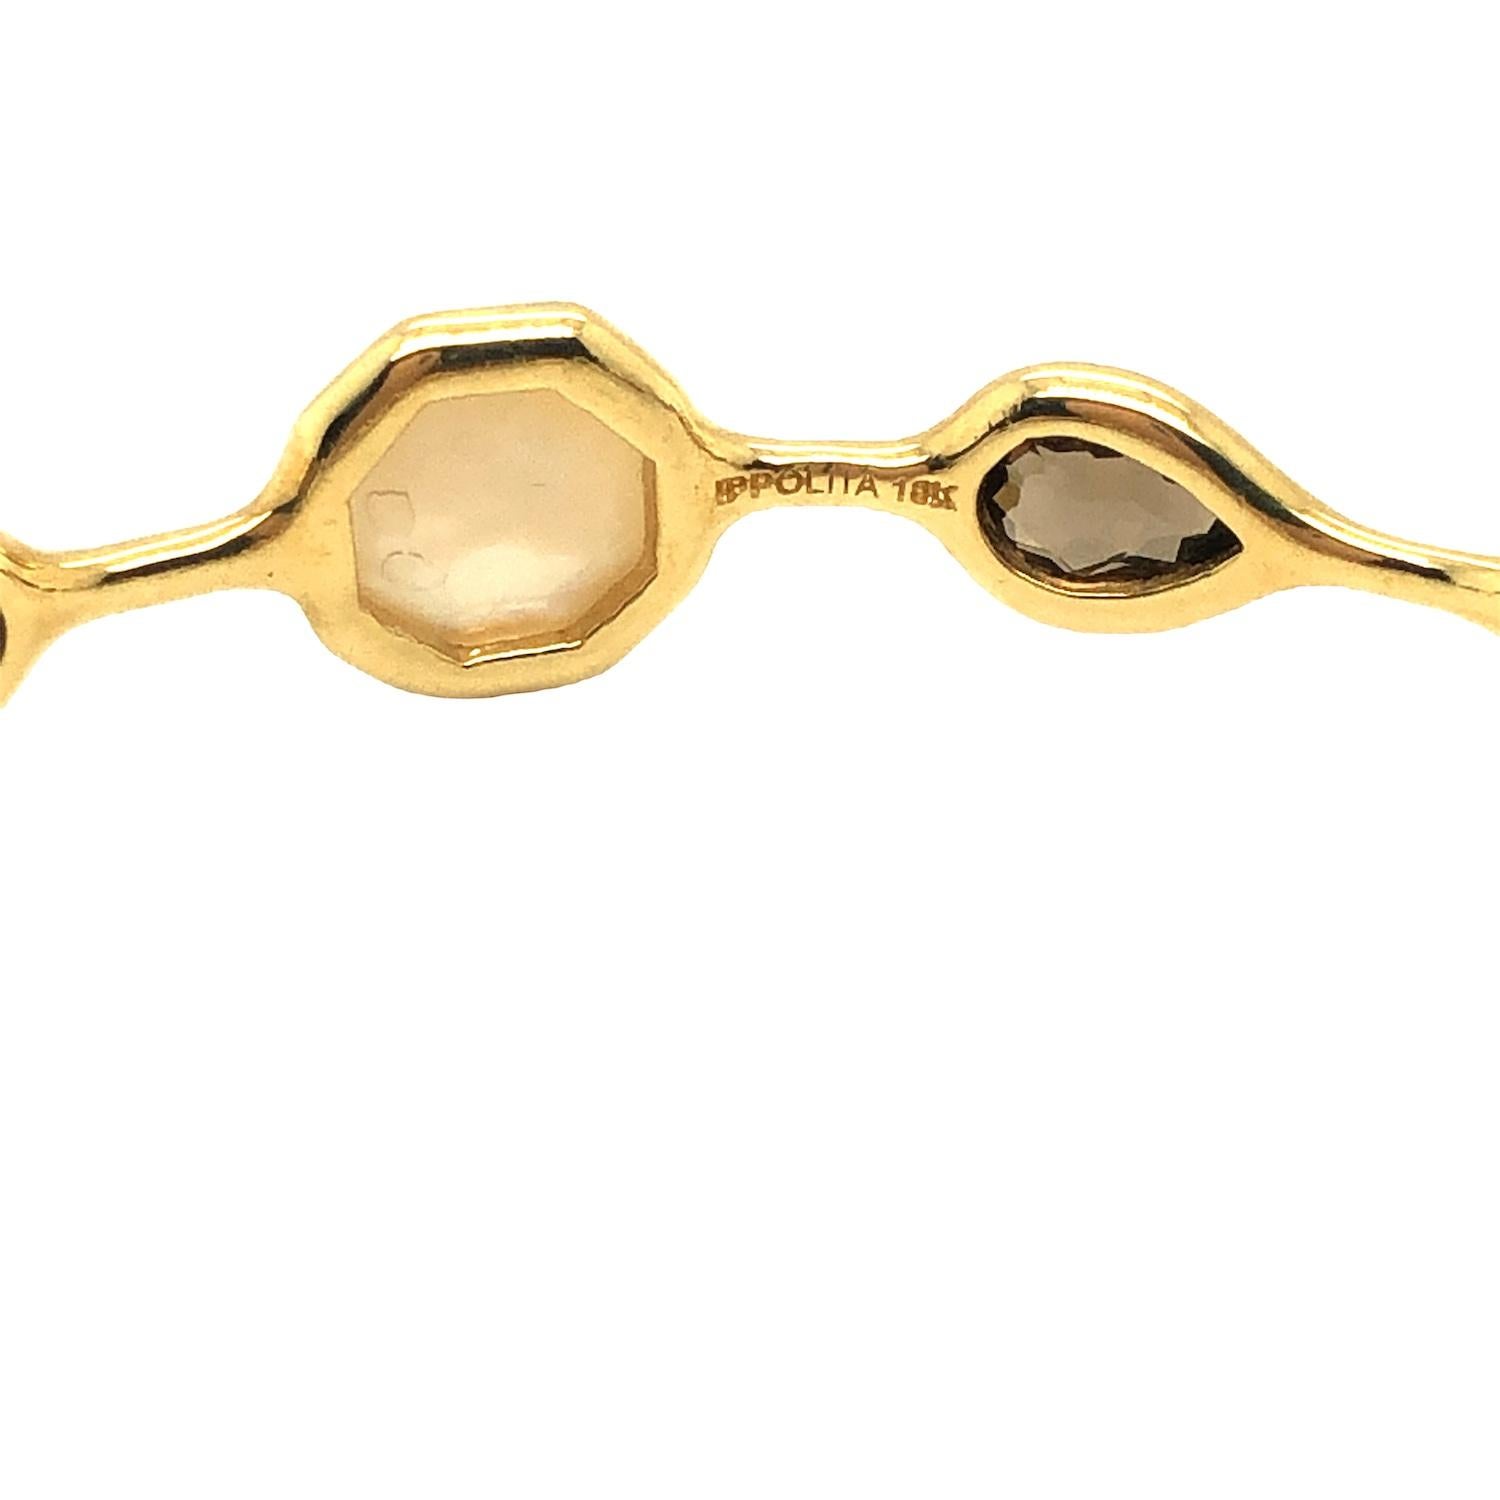 Die Rock Candy Collection von Ippolita präsentiert einen Armreif mit einer Reihe exquisiter Edelsteine, darunter Perlmutt, Rauchquarz und Onyx, die alle elegant in 18 Karat Gelbgold eingefasst sind. Dieses Armband misst 8 Zoll in der Länge, 0,4 Zoll